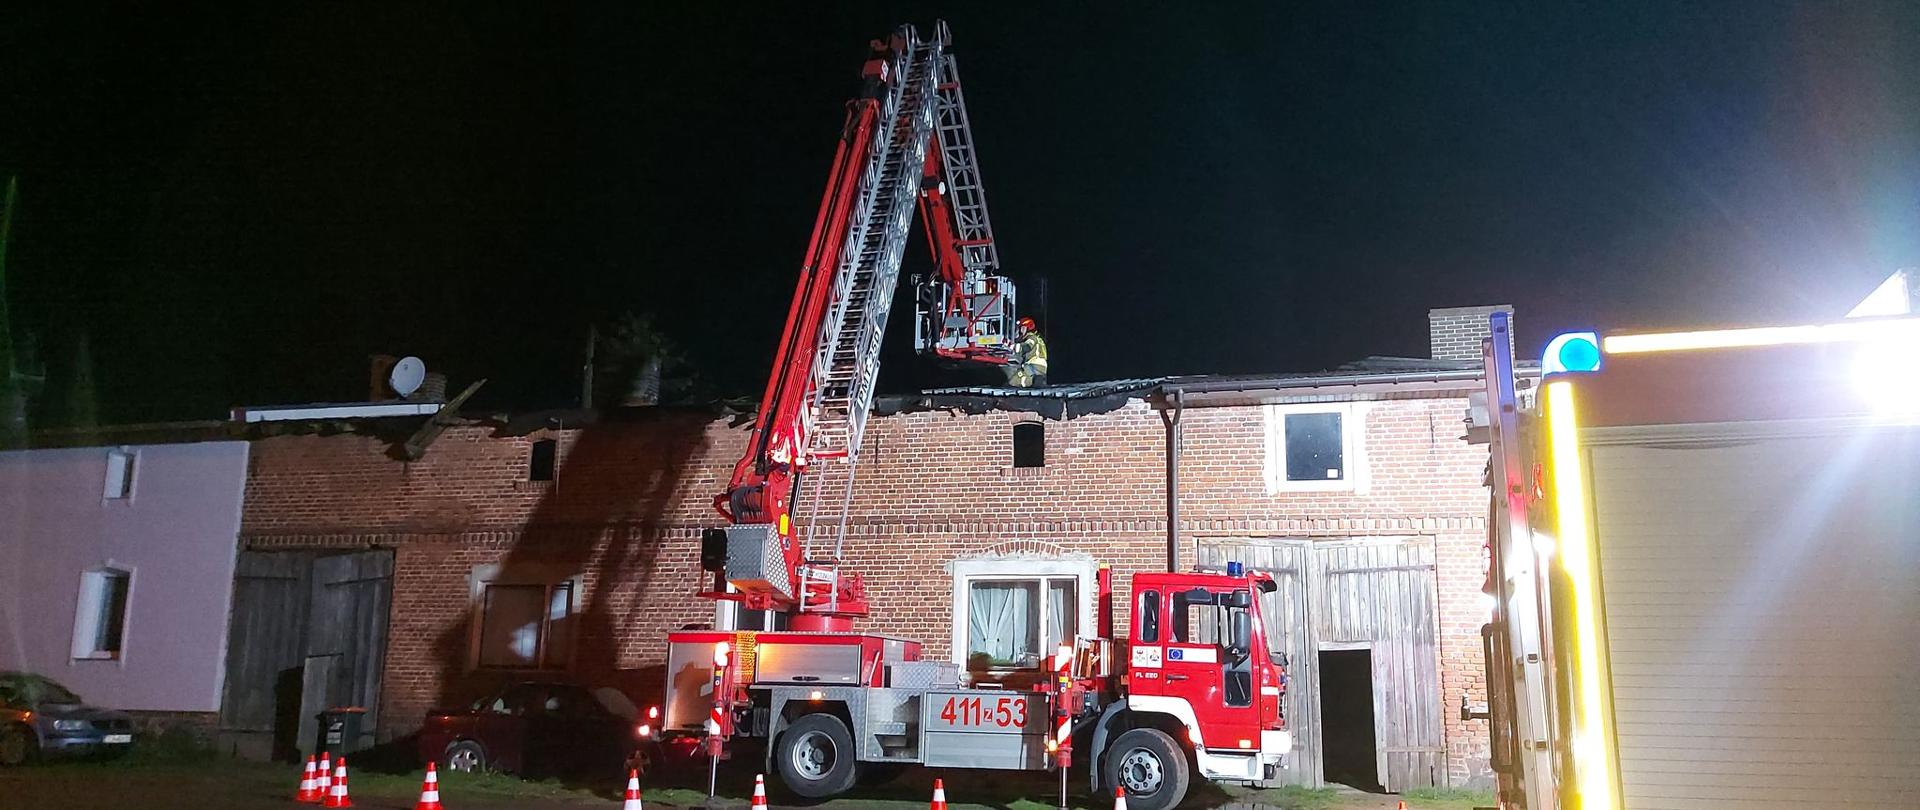 Na fotografii znajduje się rozstawiony podnośnik strażacki, który stoi obok budynku. Na dachu budynku pracują strażacy. Teren dookoła jest oświetlony, ponieważ działania trwają w porze nocnej.